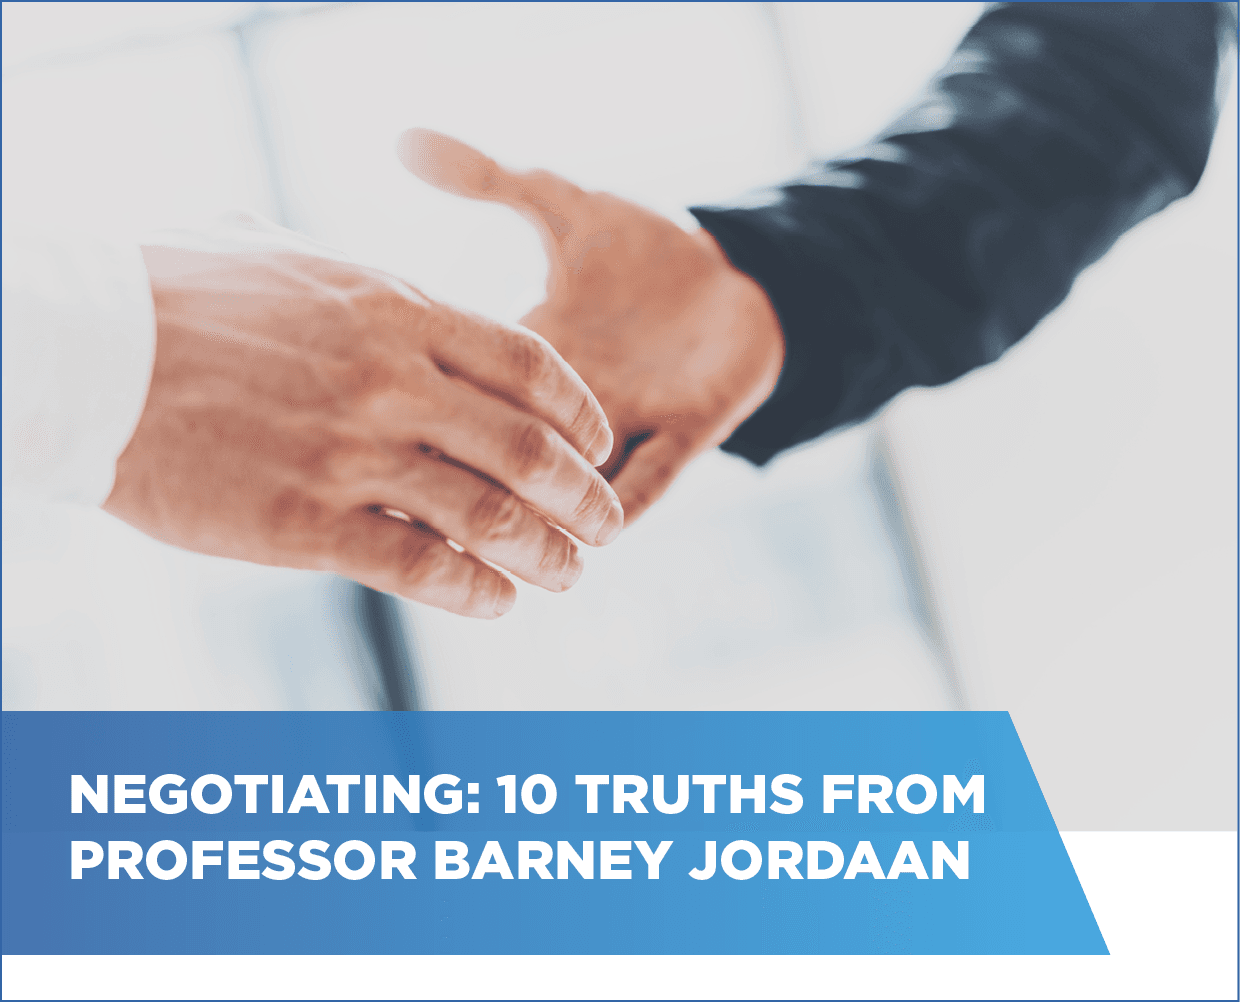 Negotiating: 10 truths from Professor Barney Jordaan